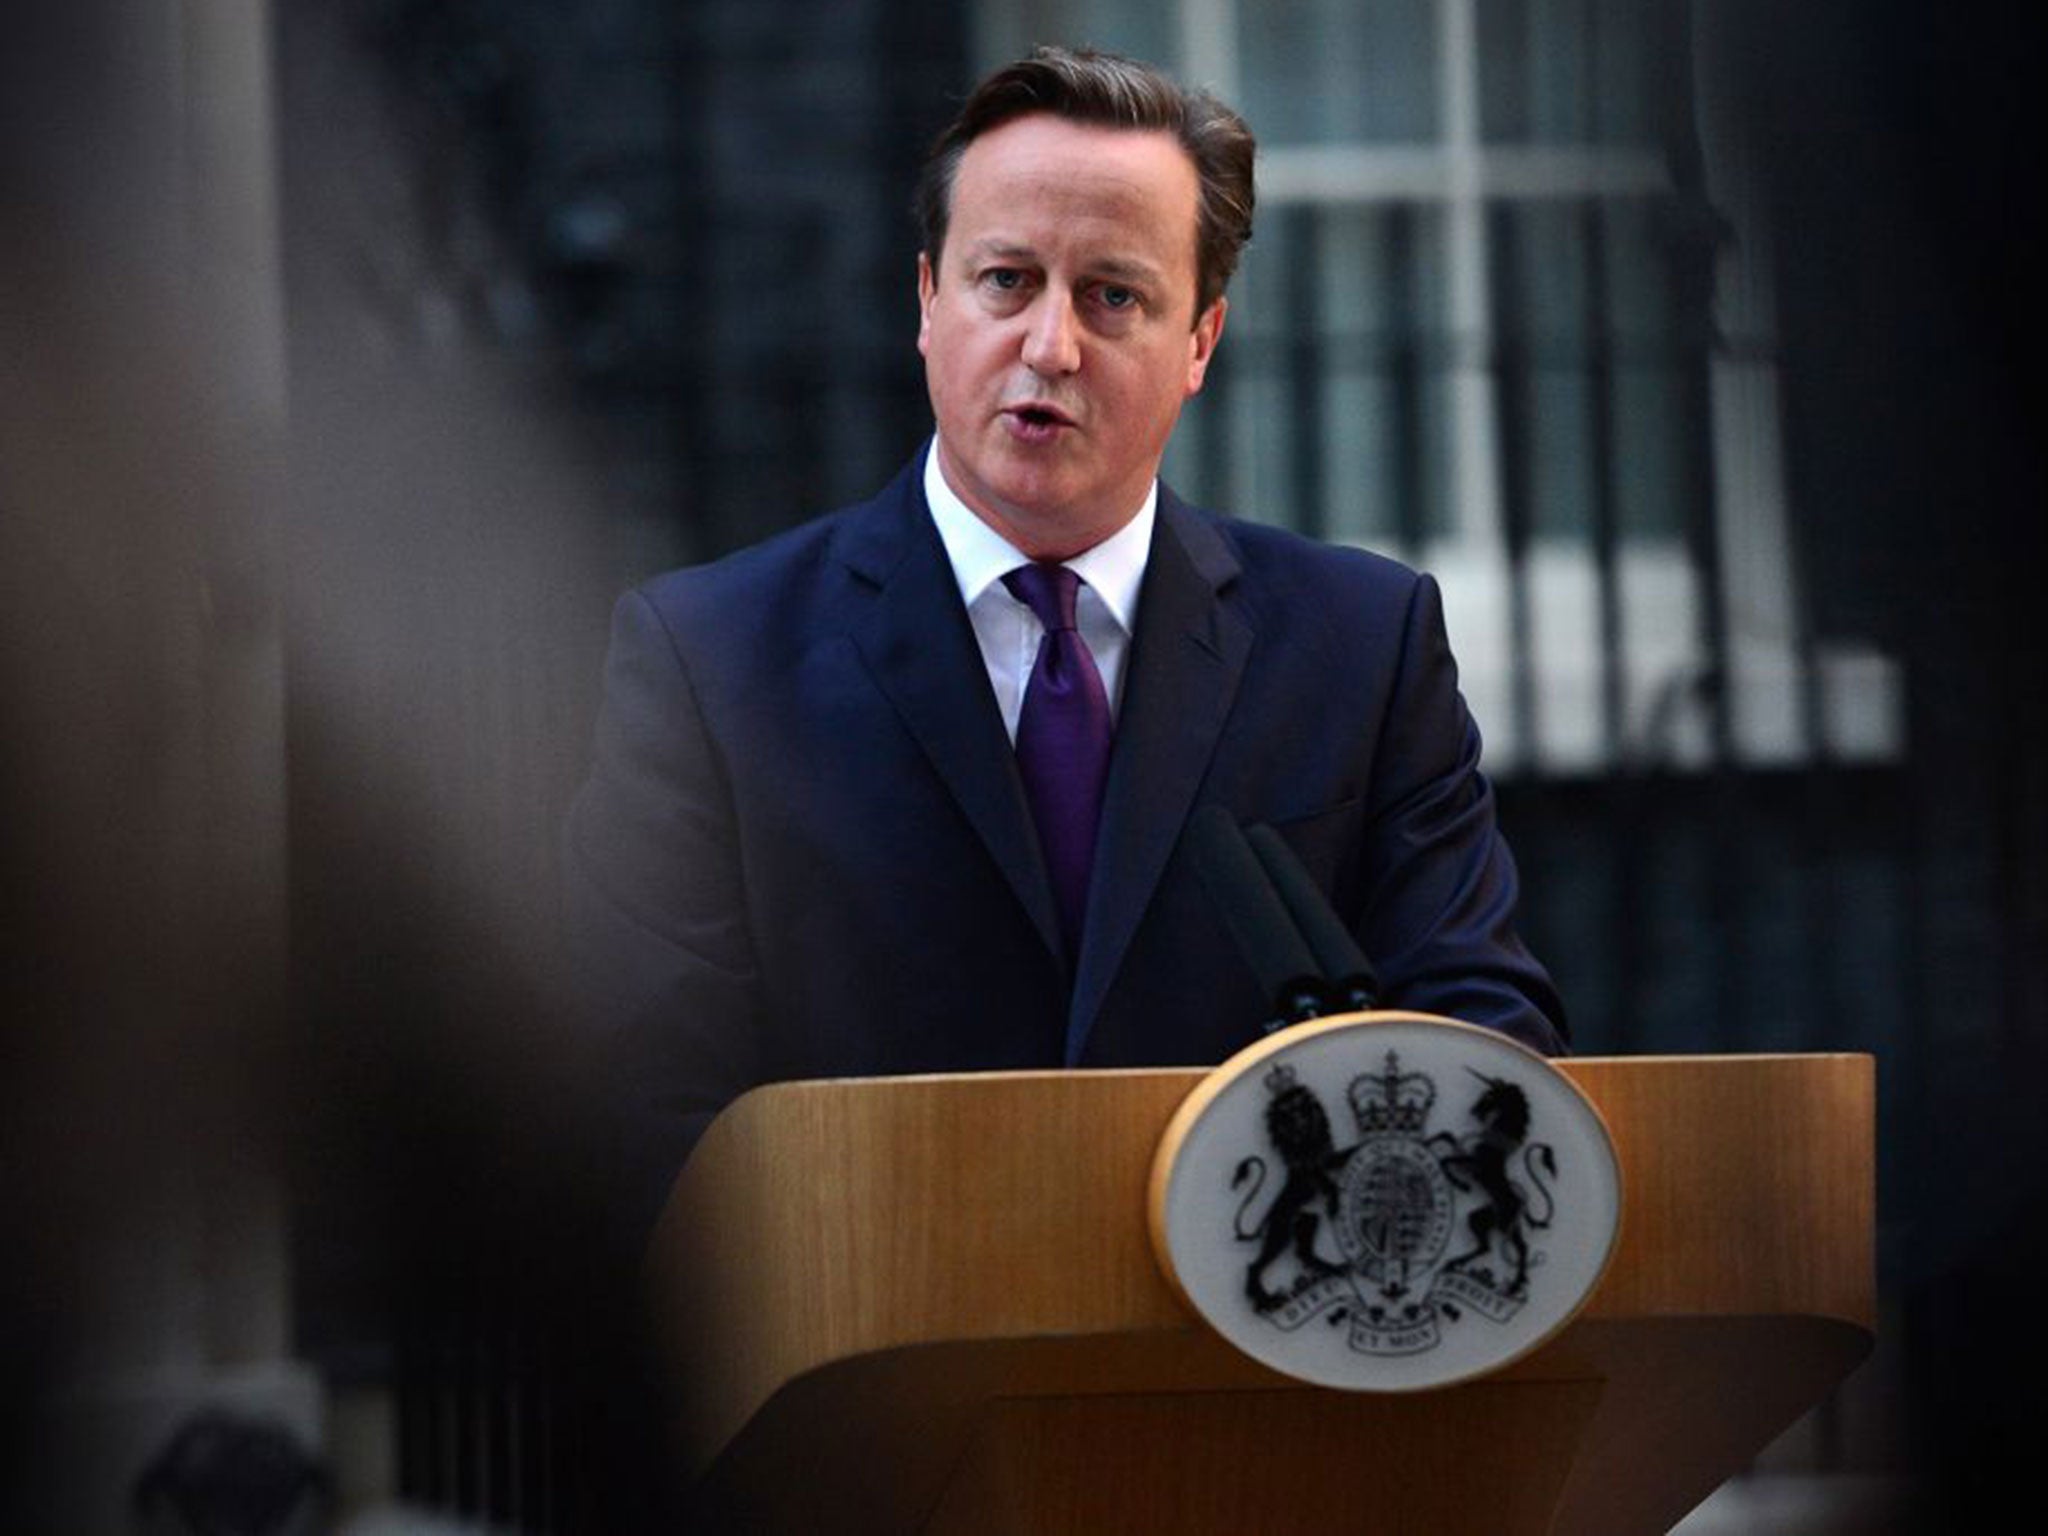 David Cameron speaking after the Scottish referendum result